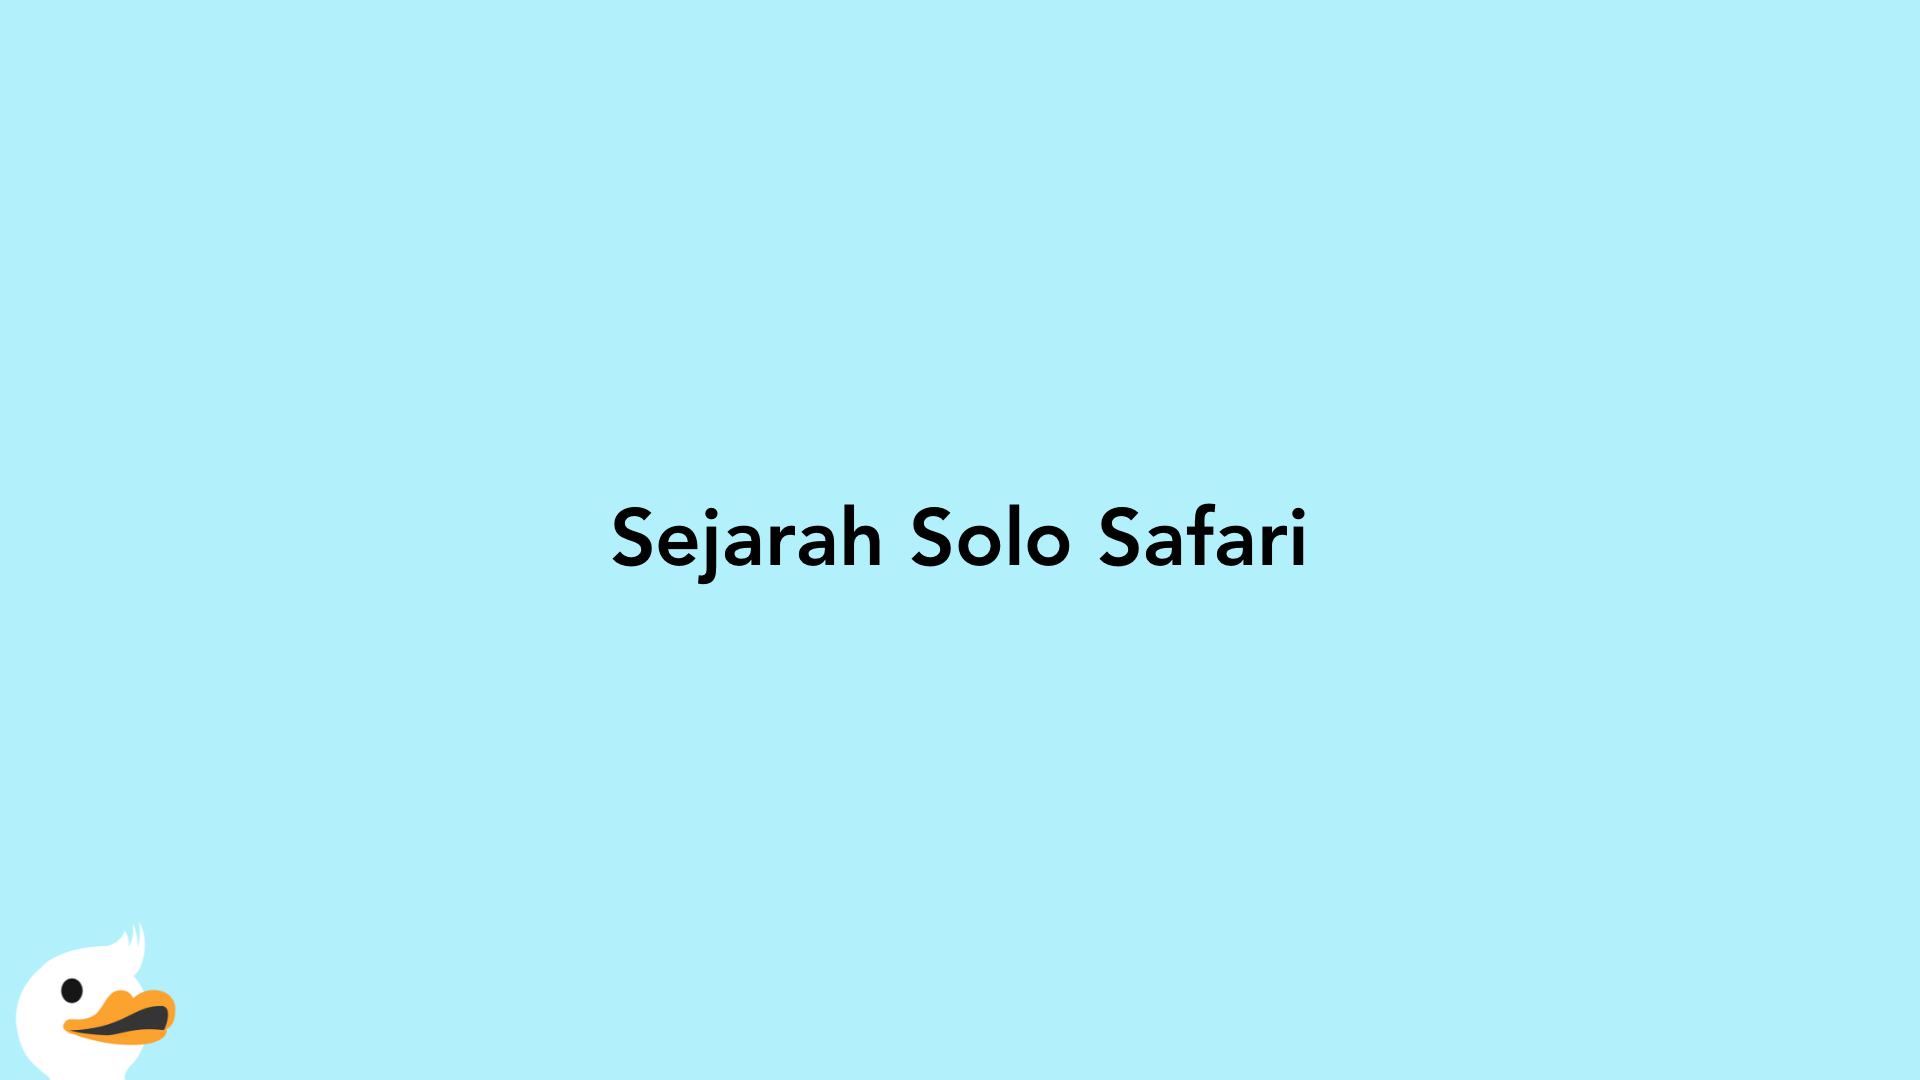 Sejarah Solo Safari